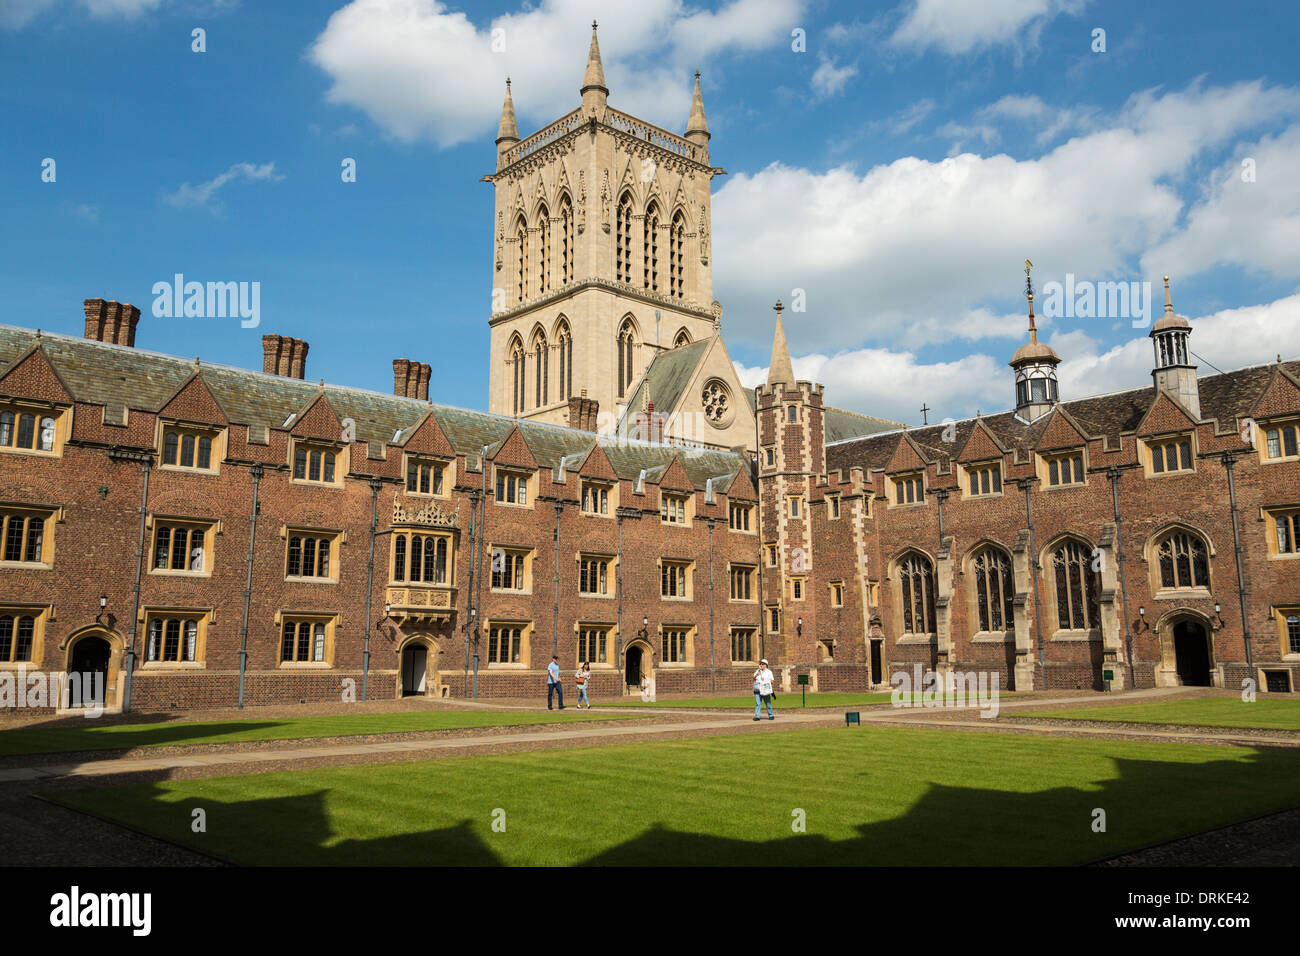 Les touristes visiter St John's College, Cambridge, Angleterre le jour ensoleillé Banque D'Images